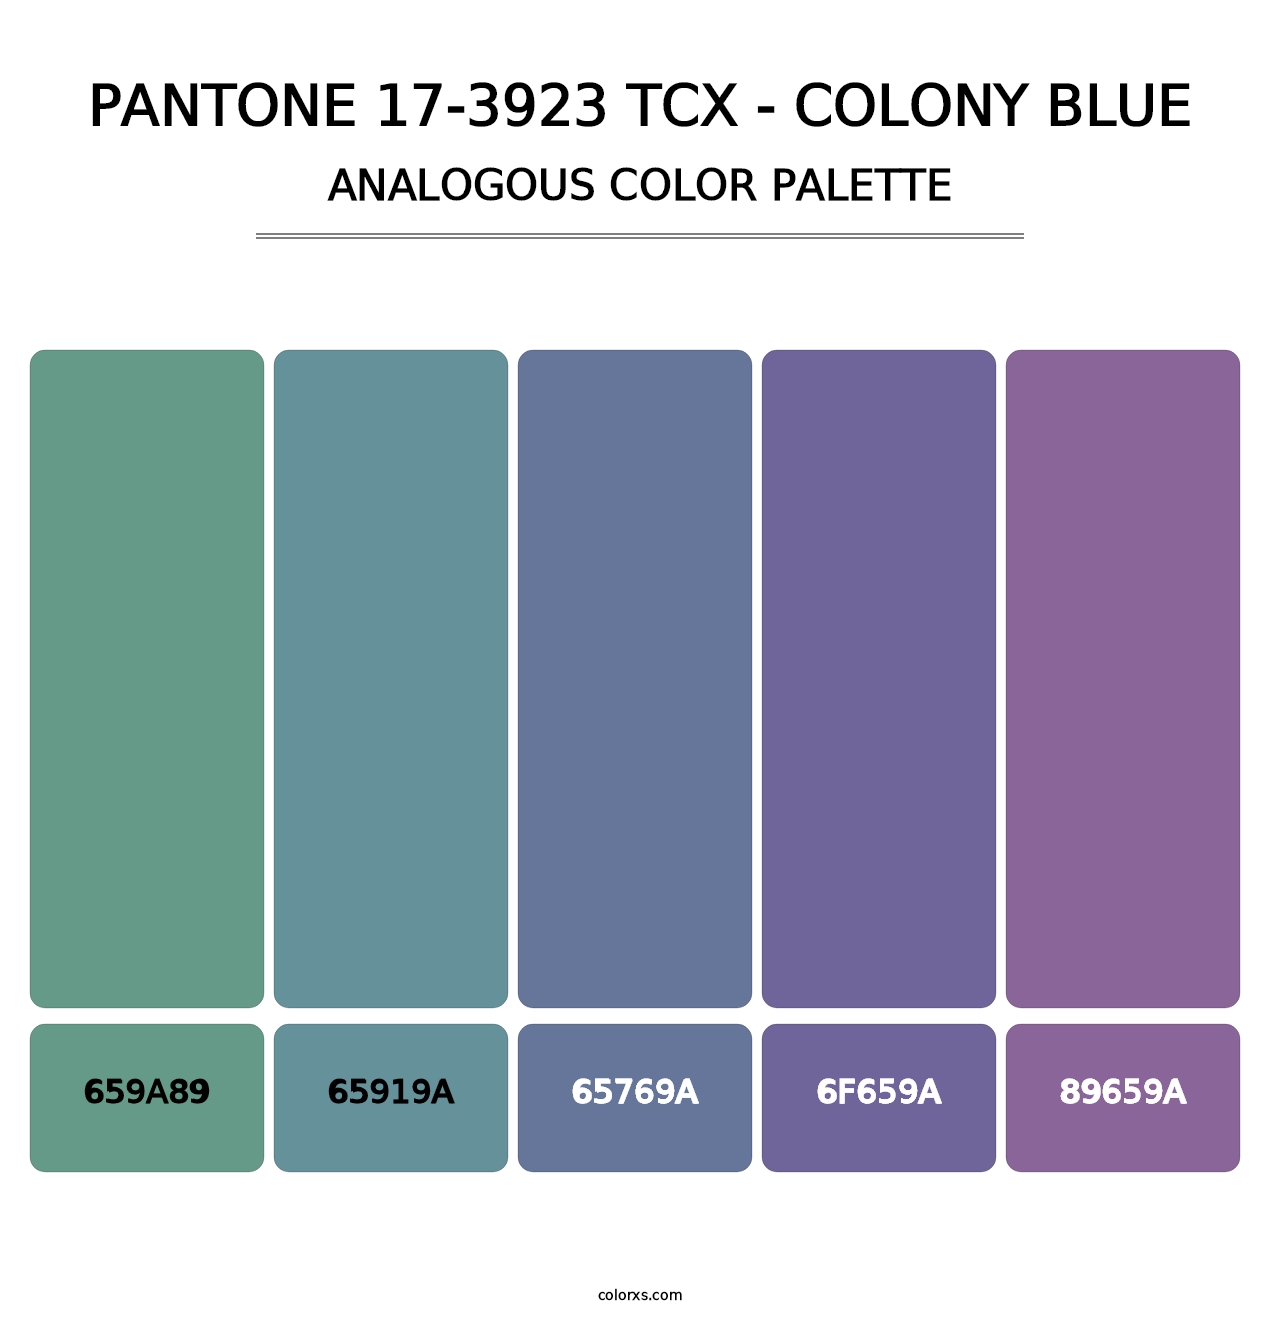 PANTONE 17-3923 TCX - Colony Blue - Analogous Color Palette